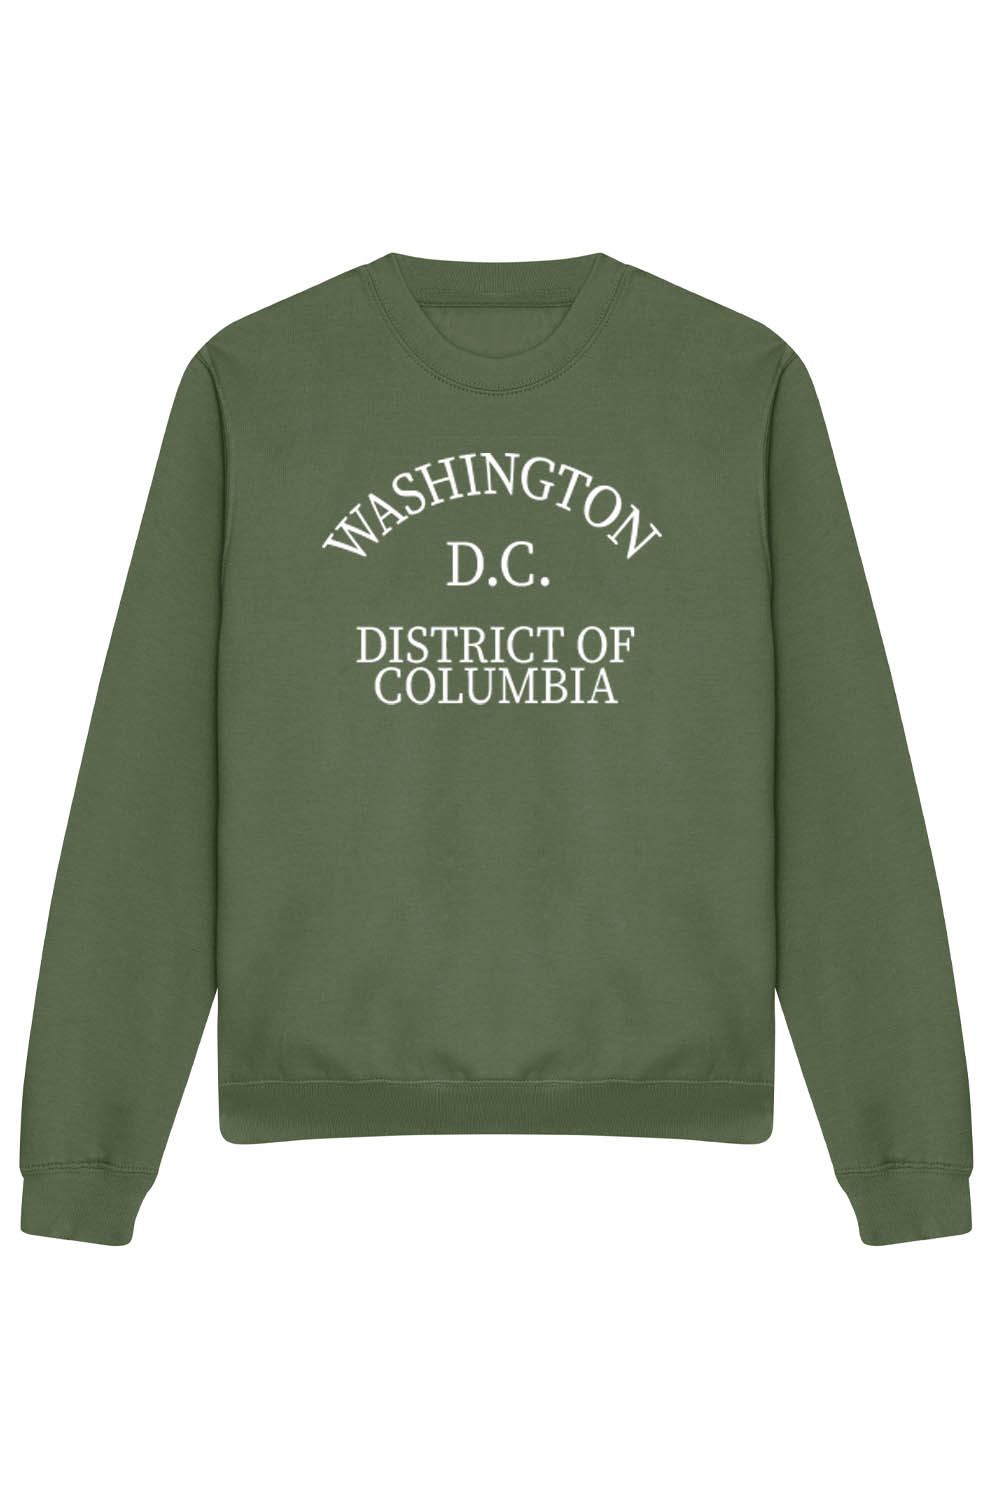 WASHINGTON D.C SWEATSHIRT IN EARTHY GREEN (CUSTOM PACKS)